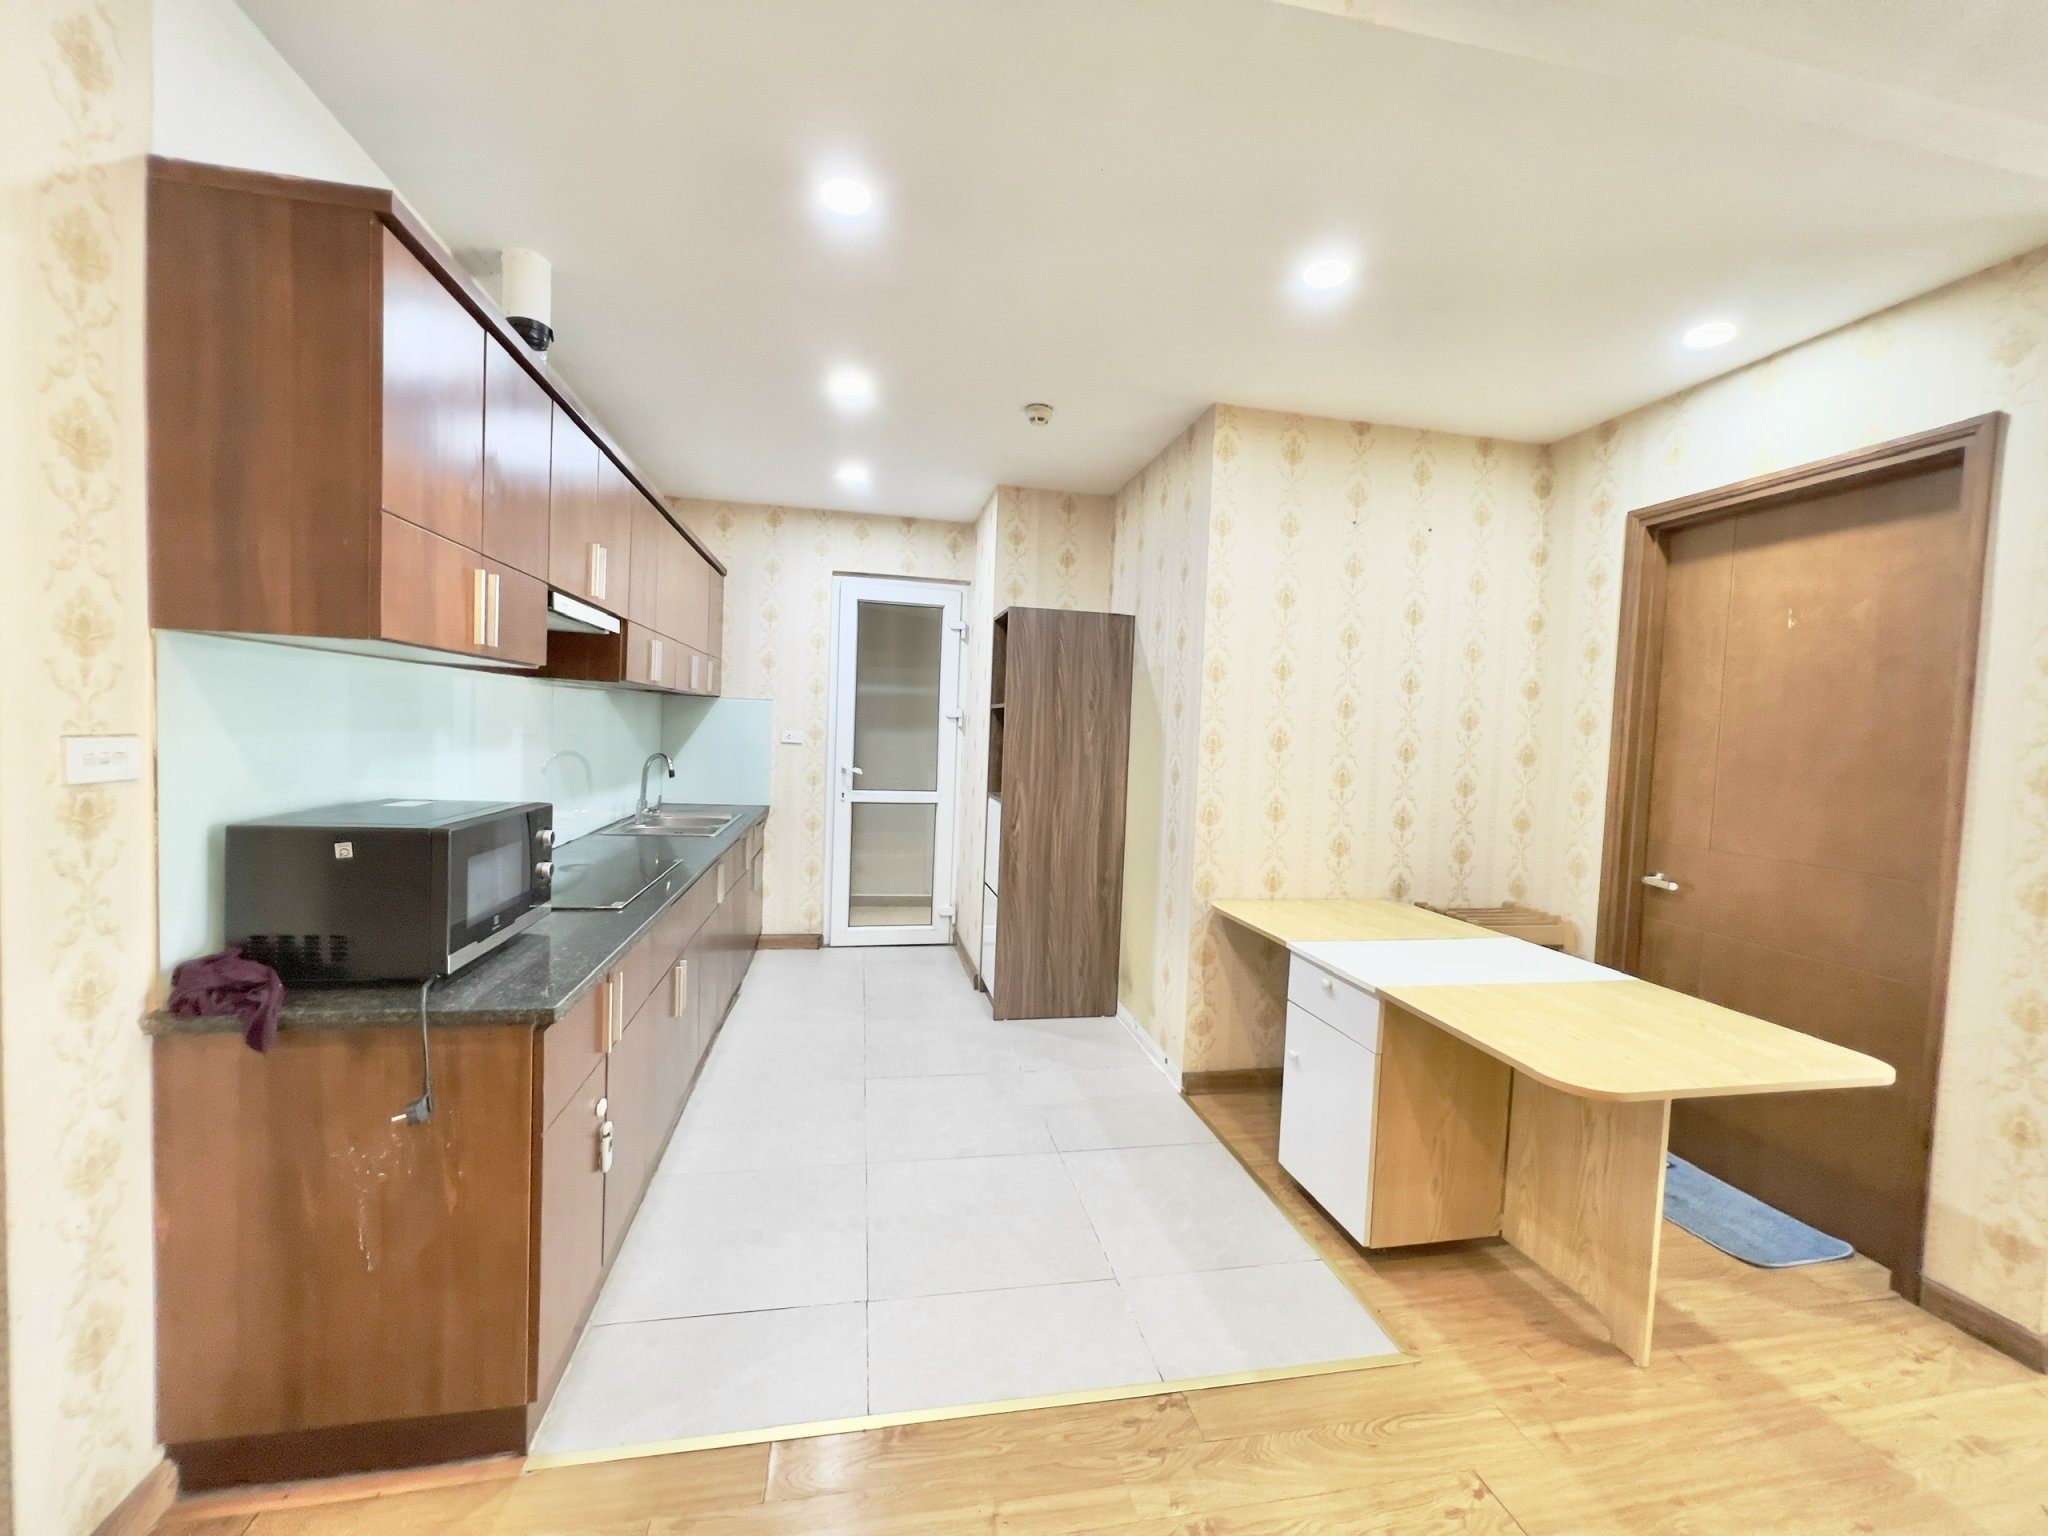 Bán chung cư Văn Phú Victoria 97m2 chia 3 phòng ngủ, thiết kế rất hợp lý và tối ưu công năng